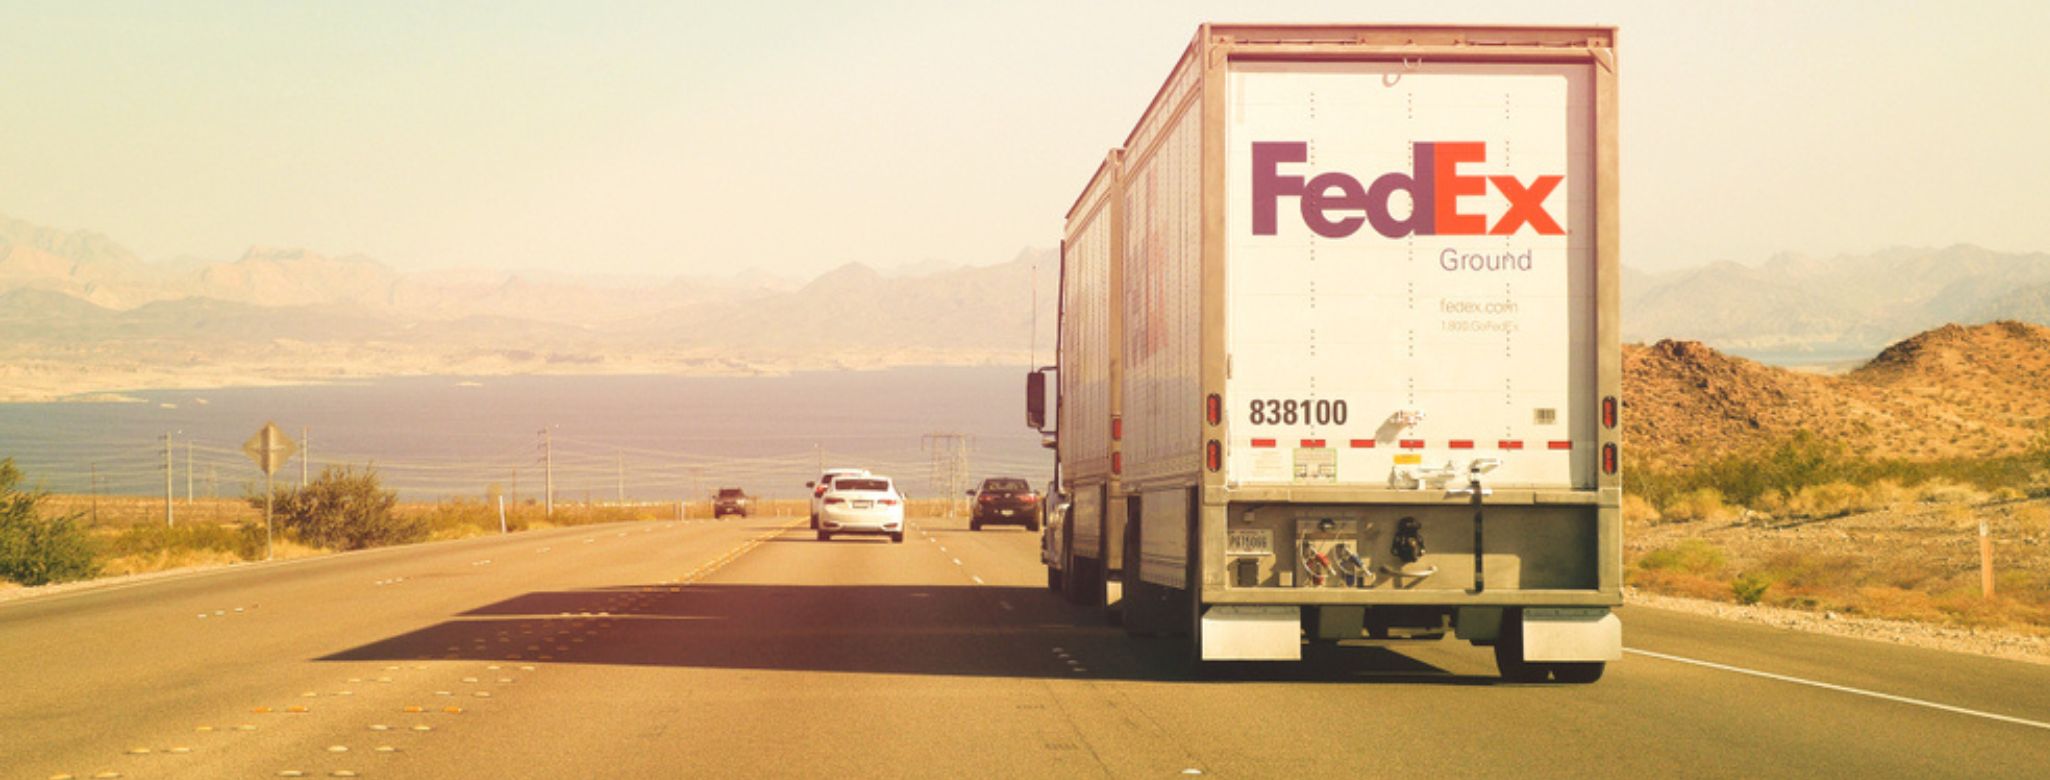 Caminhão que mostra os serviços rodoviários de entrega internacionais da FedEx na América do Sul